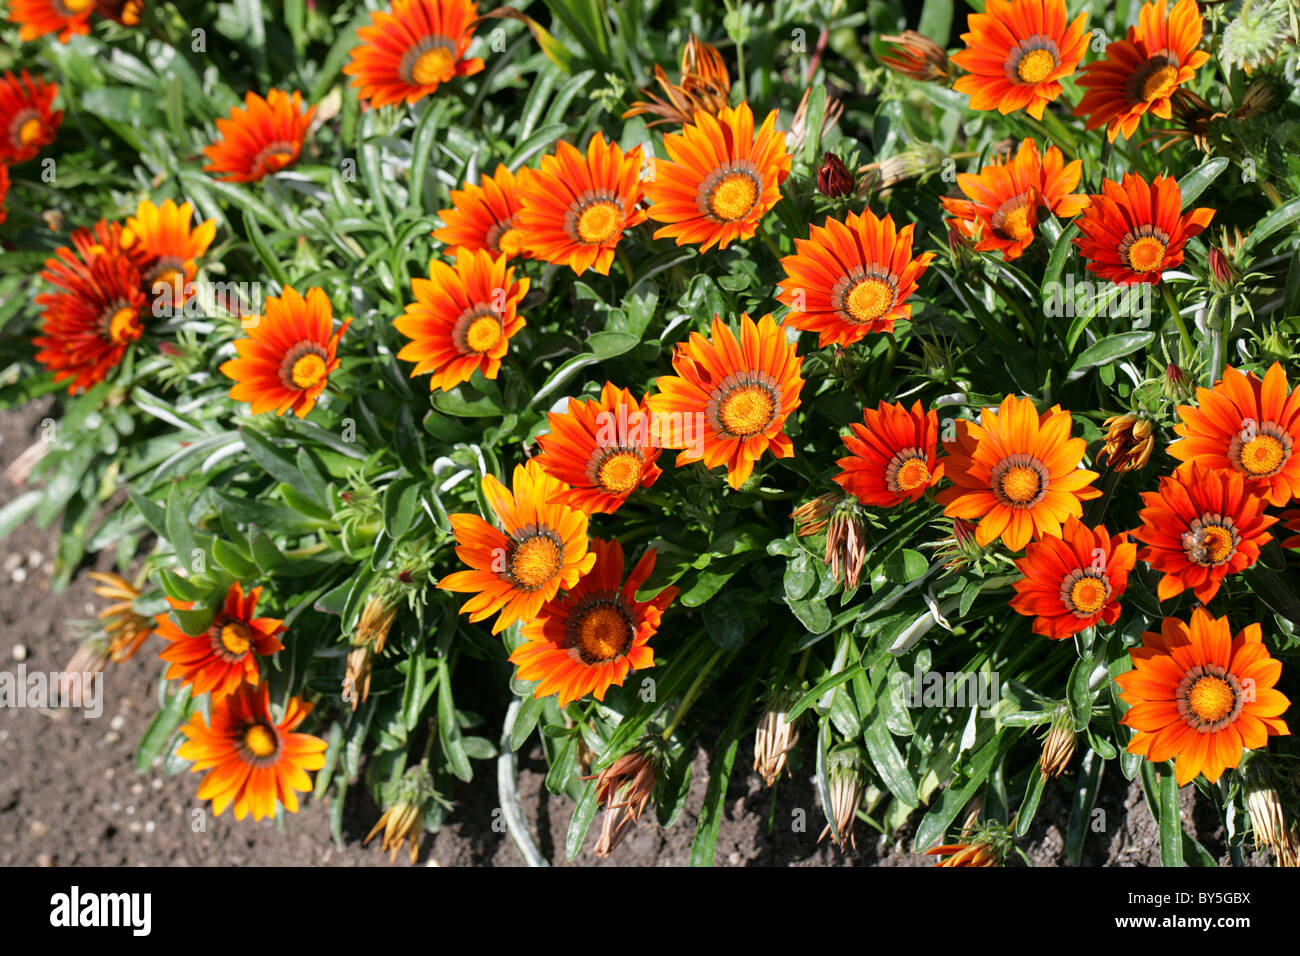 Gazania origen híbrido (Jardín), Asteraceae. Flores de color naranja brillante. Foto de stock